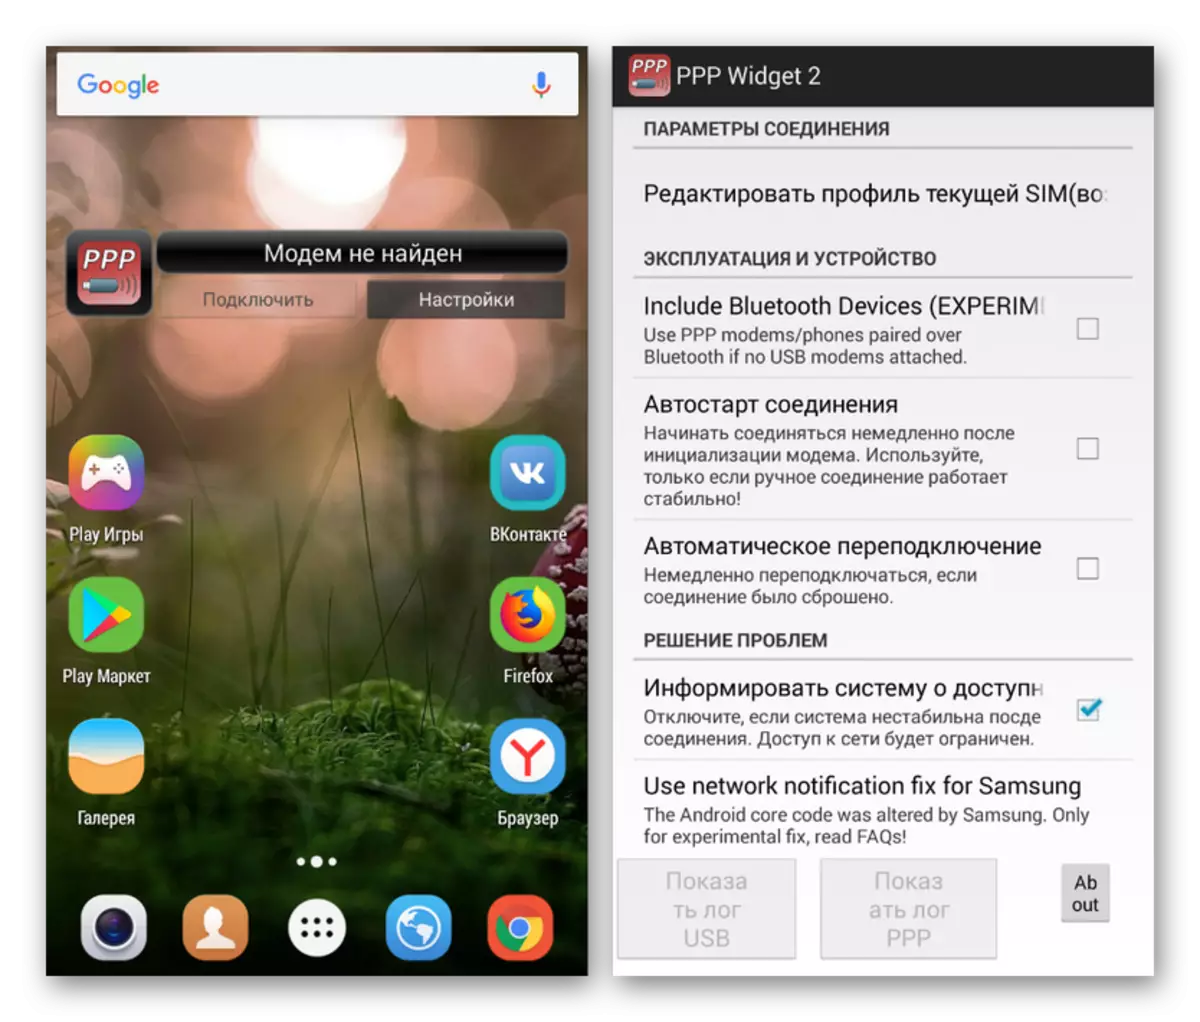 Mampiasa ny programa PPP Widget 2 amin'ny Android